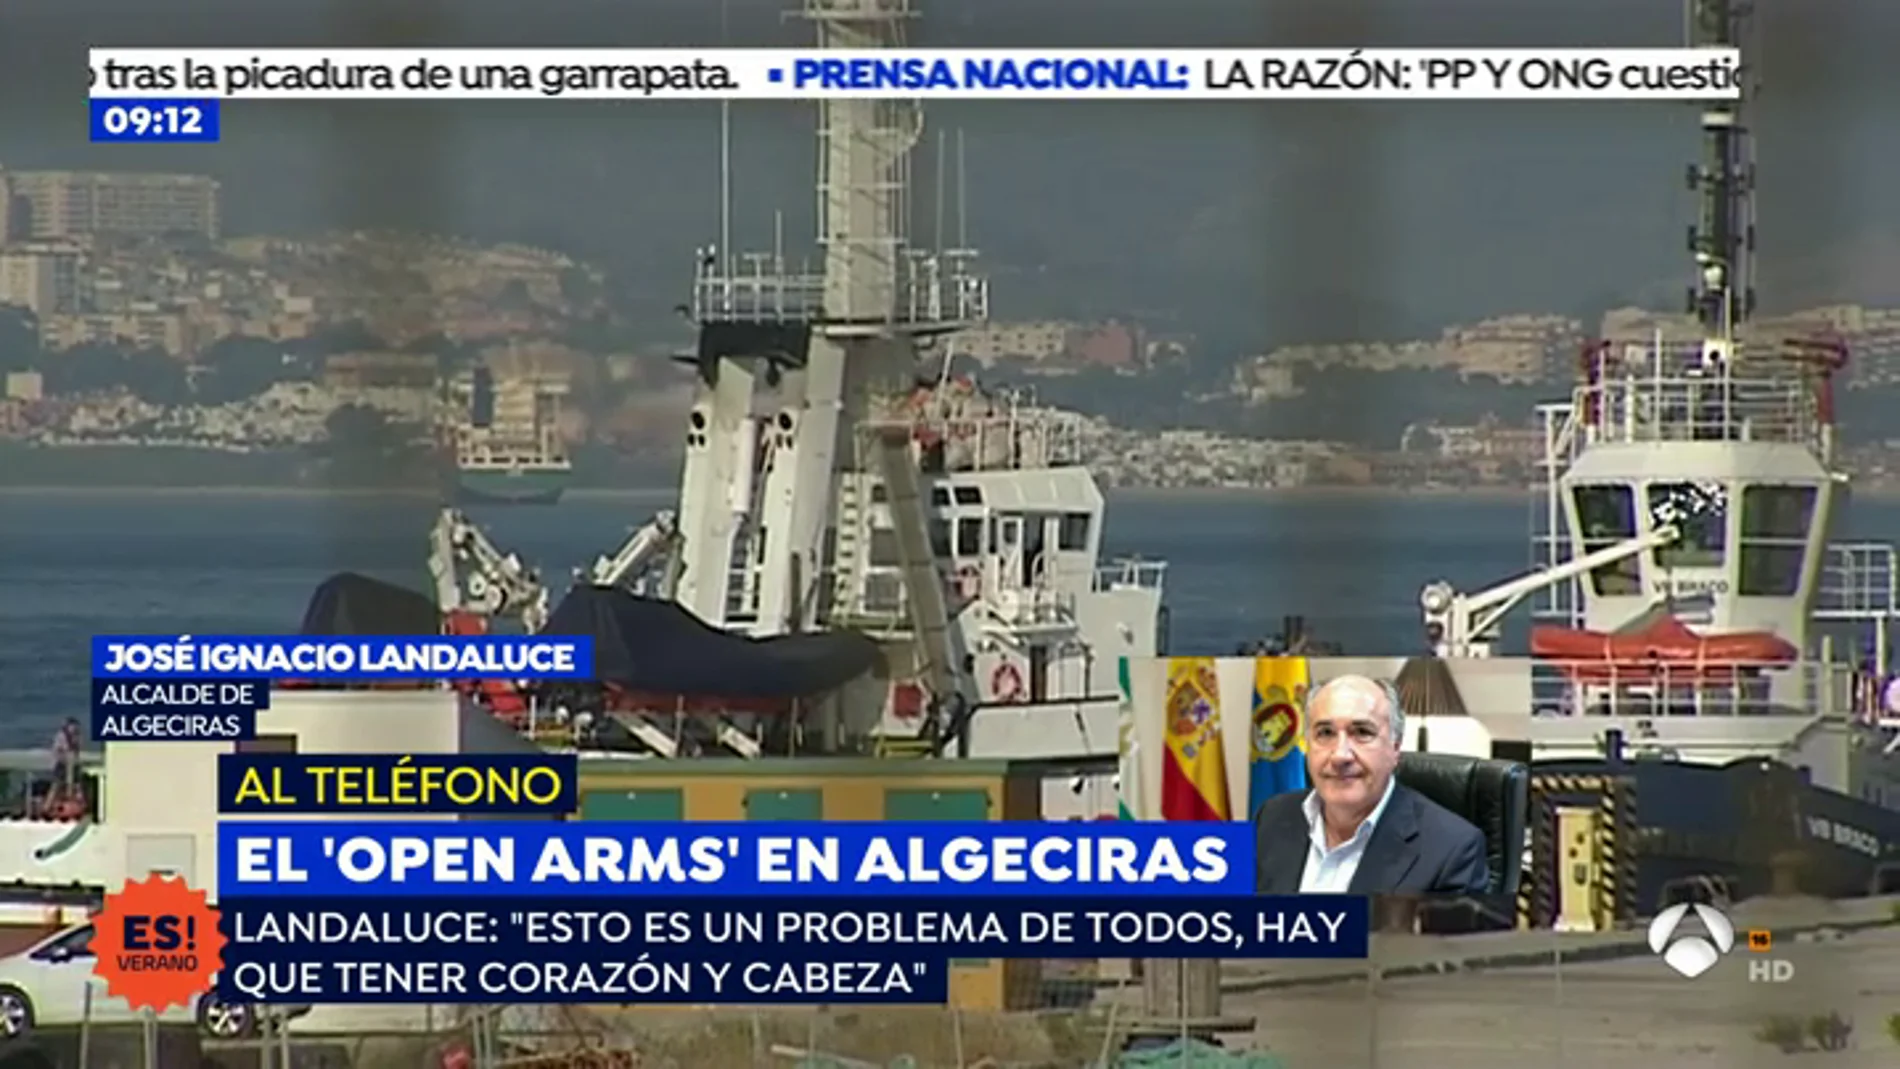 José Ignacio Landaluce, alcalde de Algeciras: "Esto es un problema de todos, hay que tener corazón y cabeza"